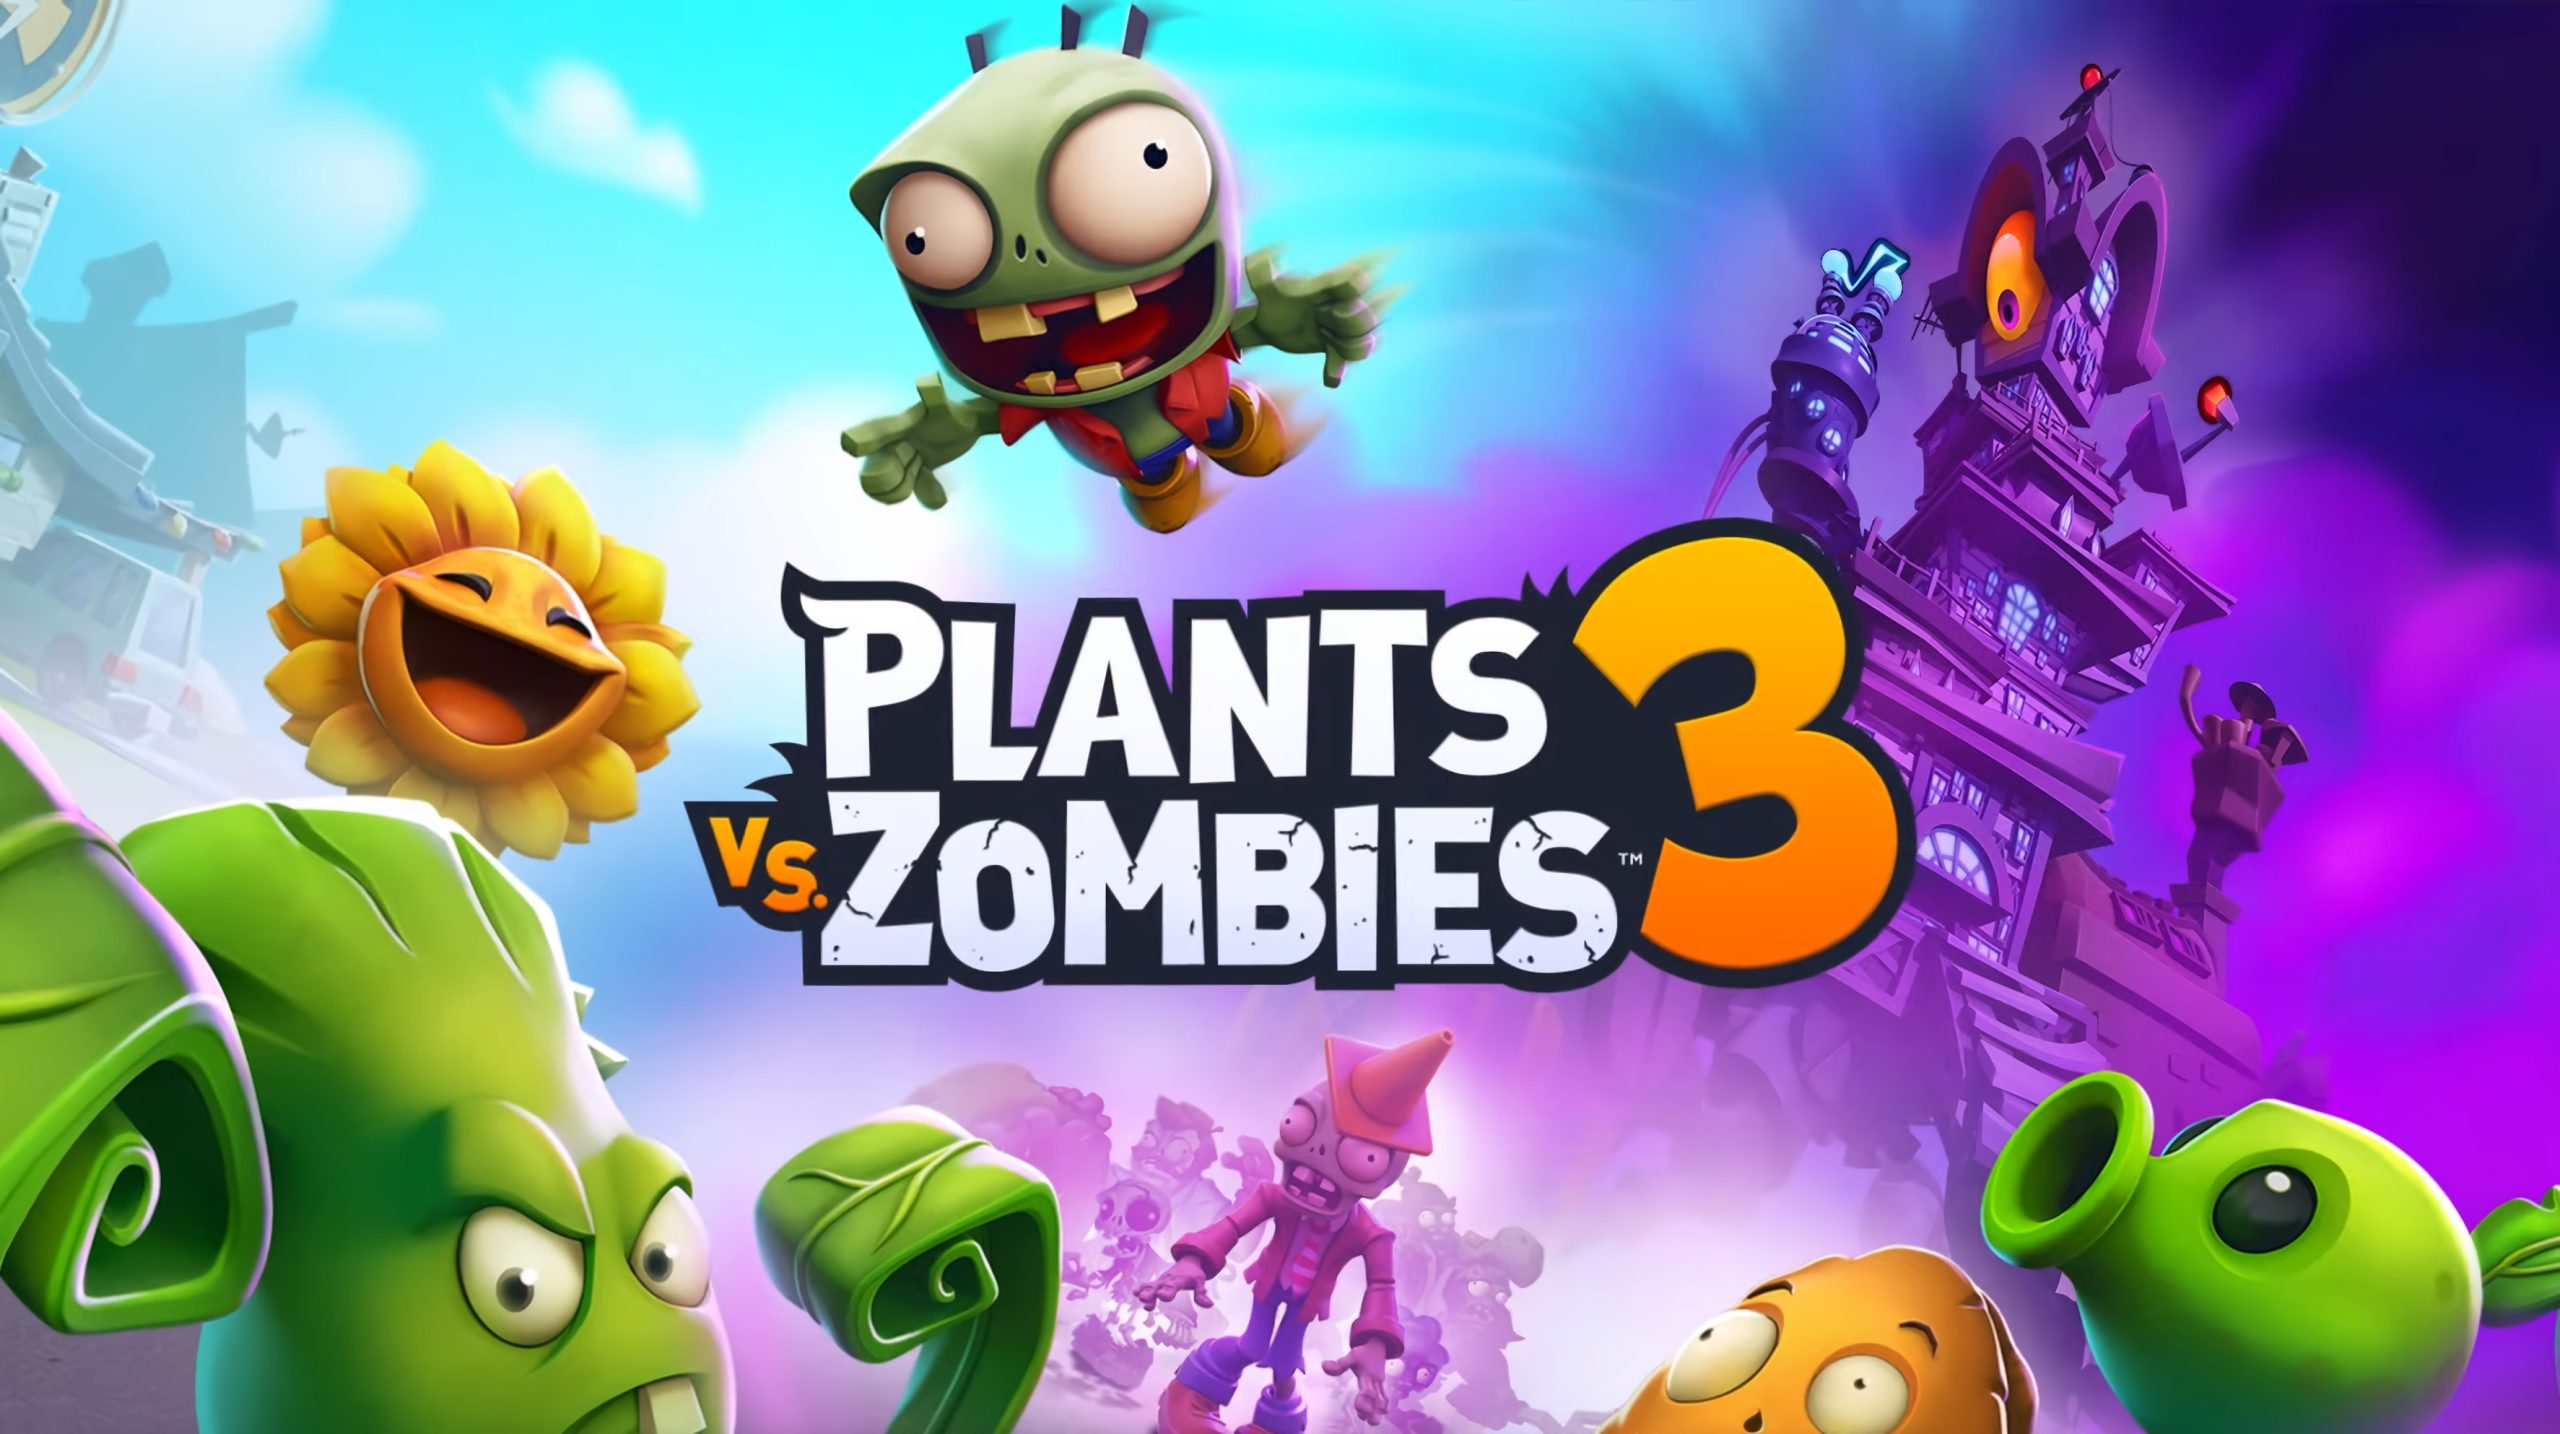 plants vs zombies 3